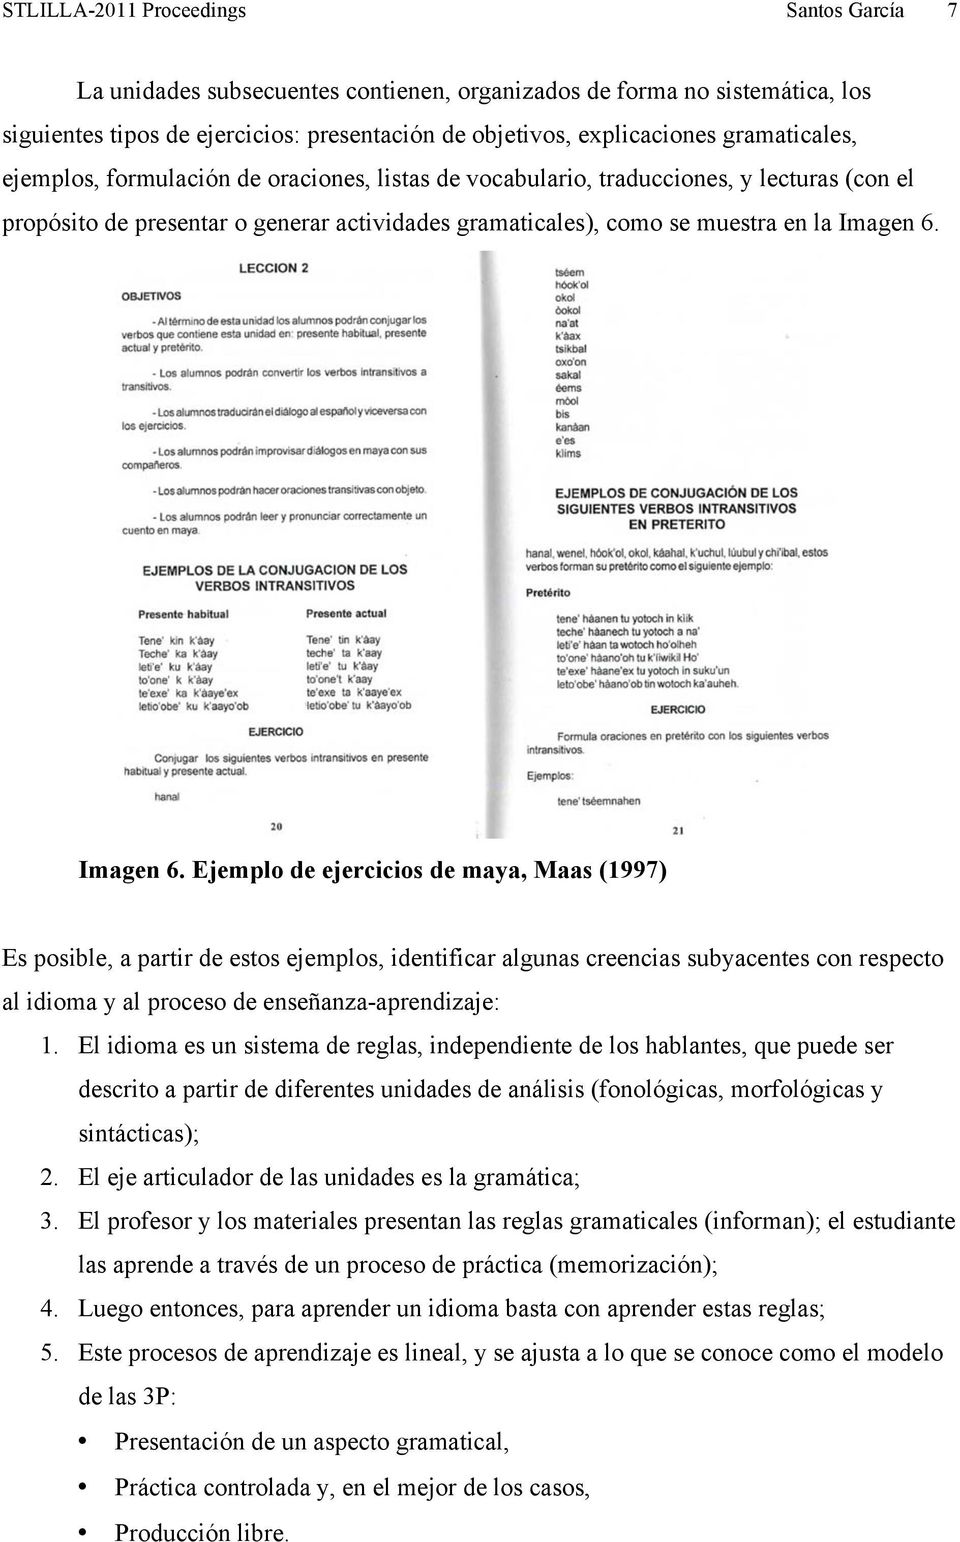 Imagen 6. Ejemplo de ejercicios de maya, Maas (1997) Es posible, a partir de estos ejemplos, identificar algunas creencias subyacentes con respecto al idioma y al proceso de enseñanza-aprendizaje: 1.